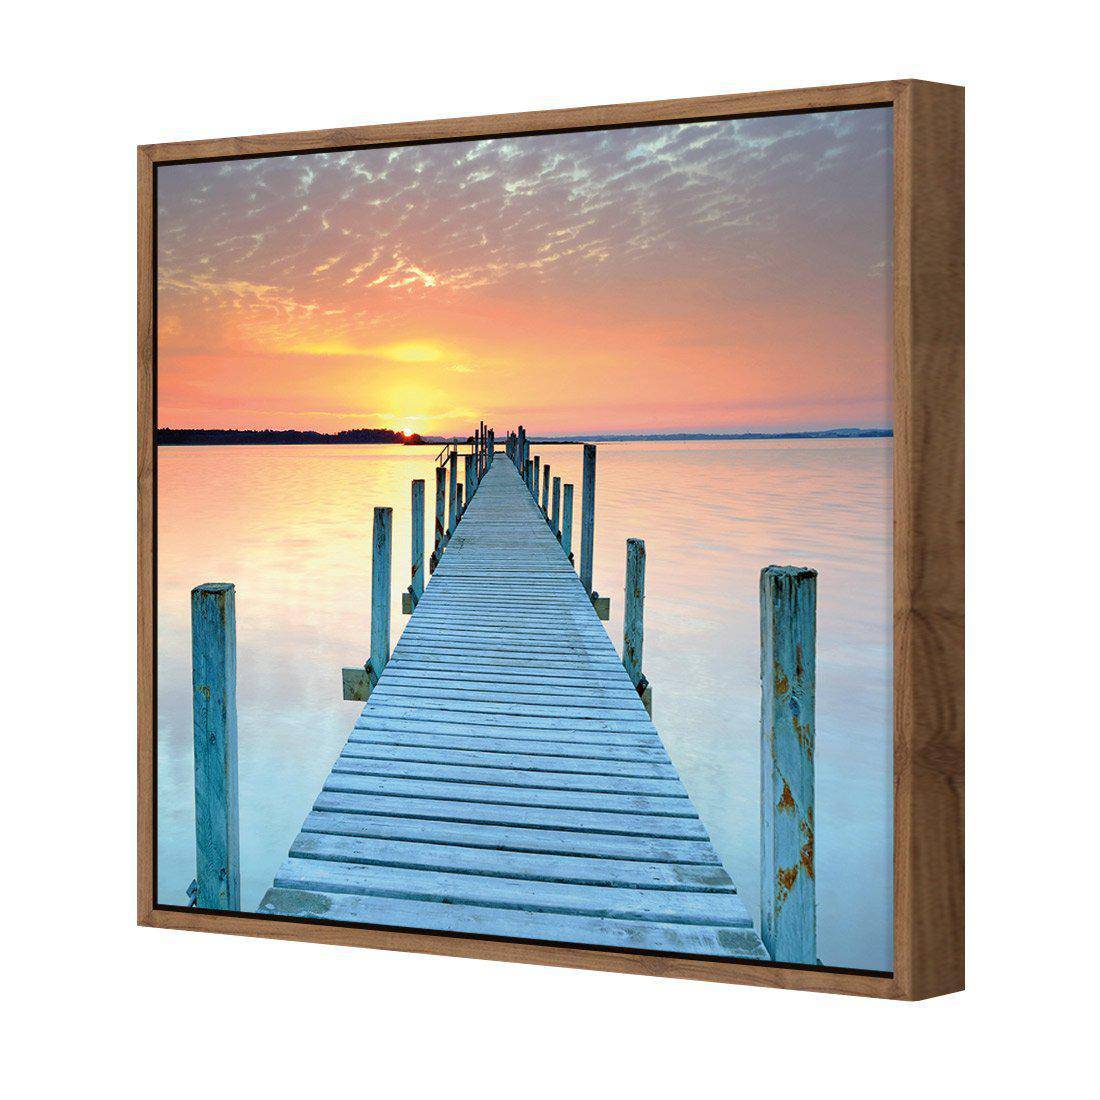 Sunset Pier Canvas Art-Canvas-Wall Art Designs-30x30cm-Canvas - Natural Frame-Wall Art Designs